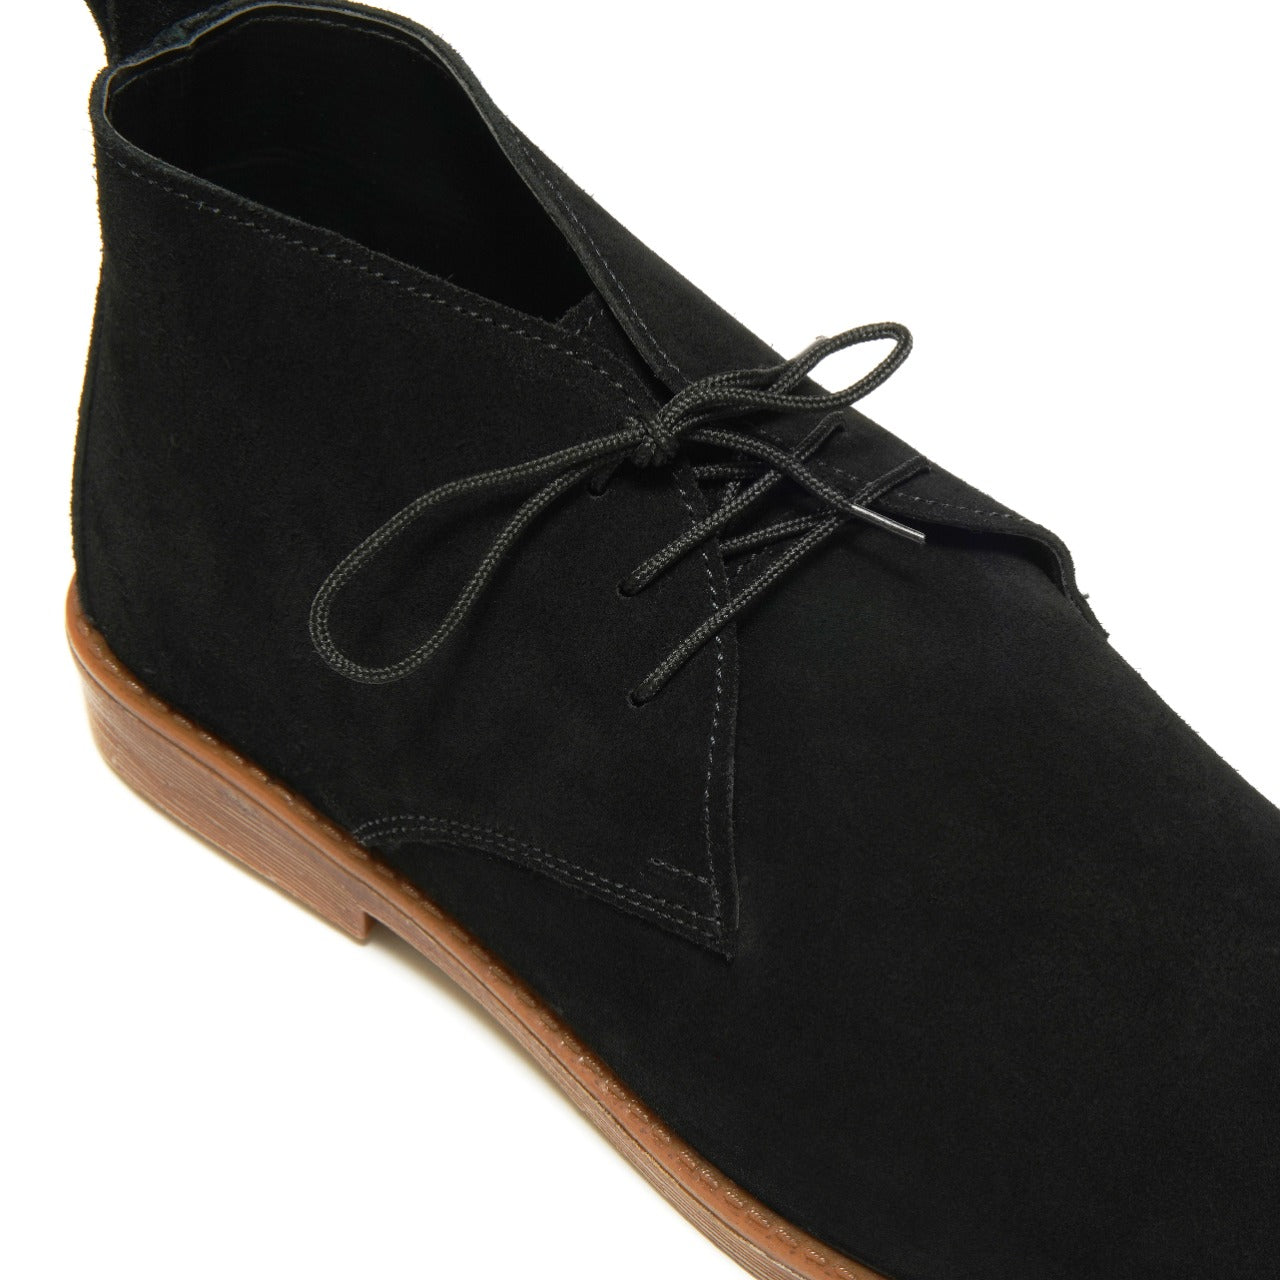 SKU: 1002- Black Suede Shoes